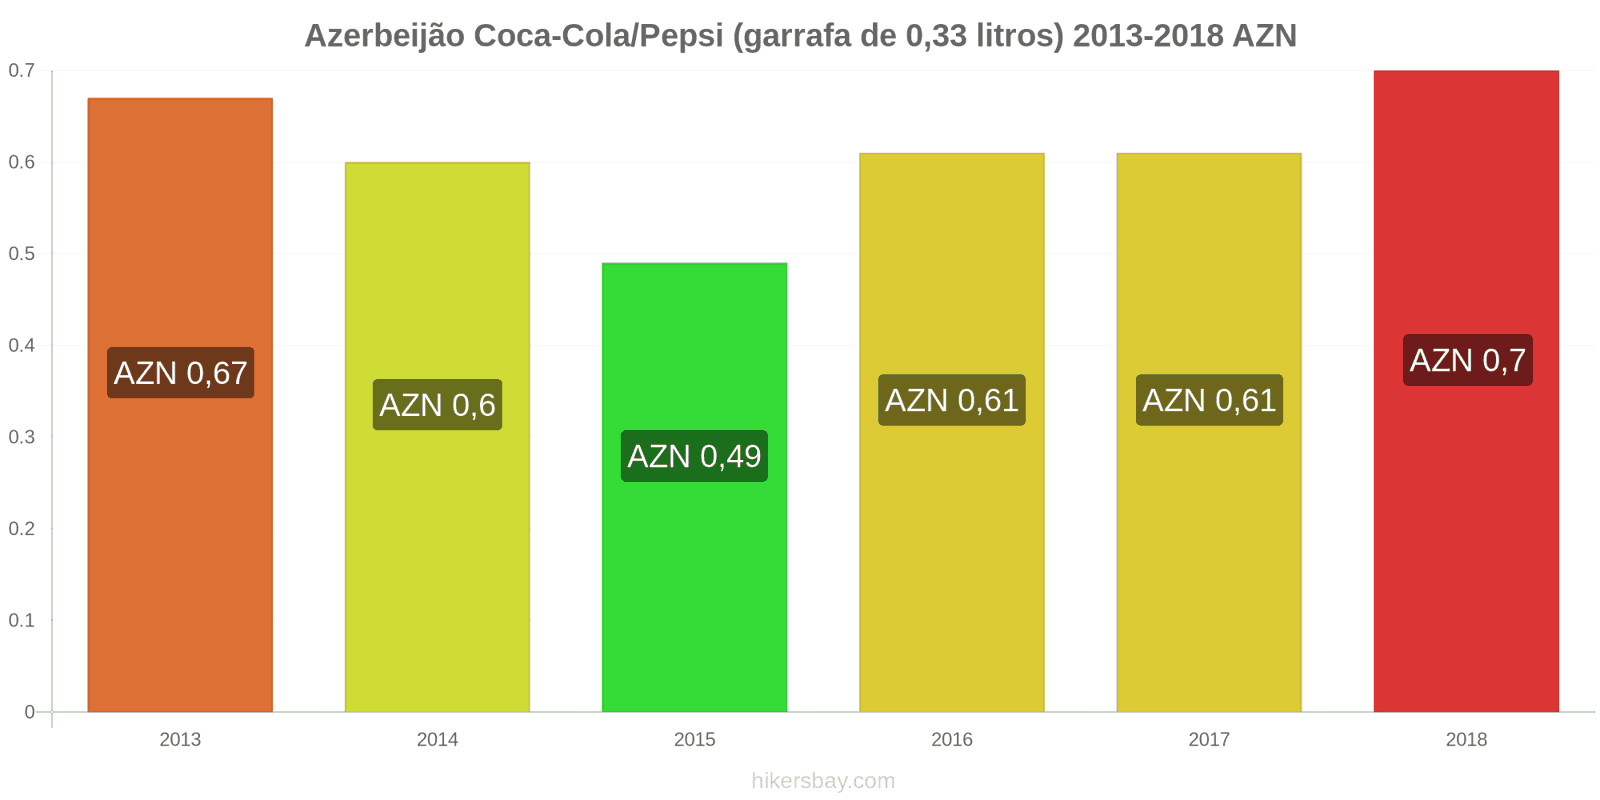 Azerbeijão mudanças de preços Coca-Cola/Pepsi (garrafa de 0.33 litros) hikersbay.com